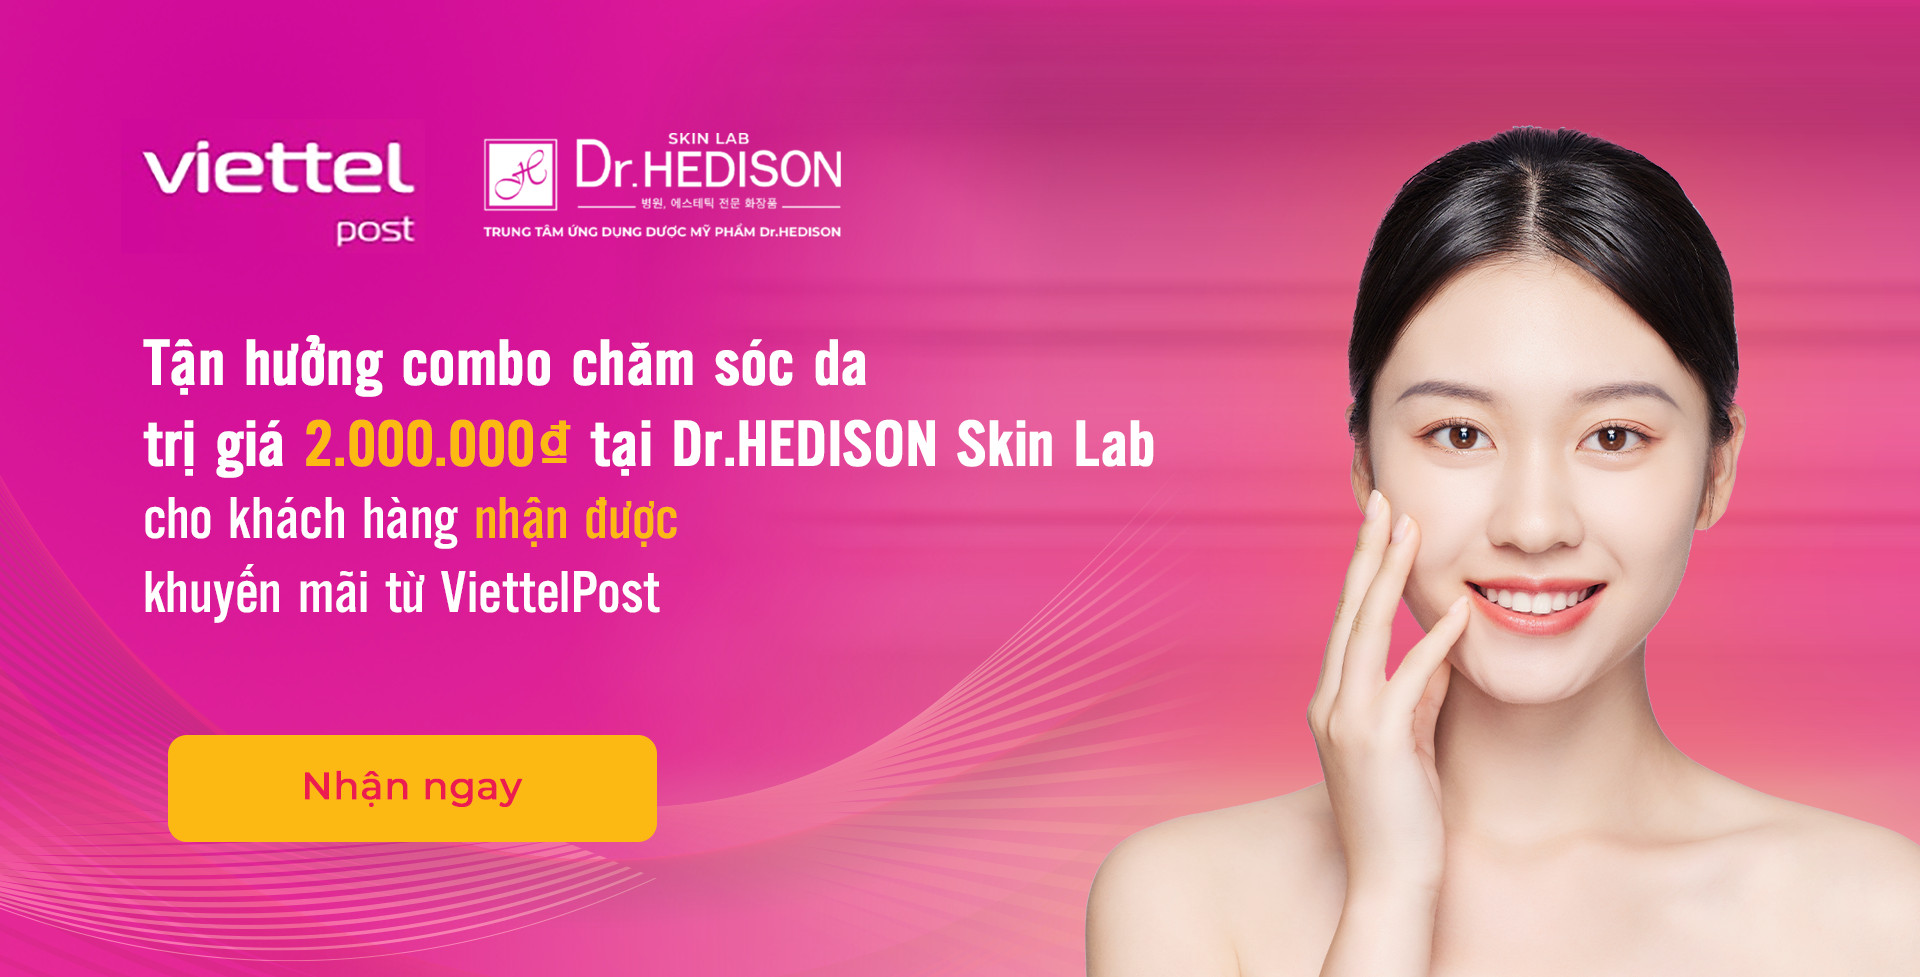 Nhận ngay combo chăm sóc da 2.000.000₫ từ DrHEDISON Skin Lab & Viettel Post